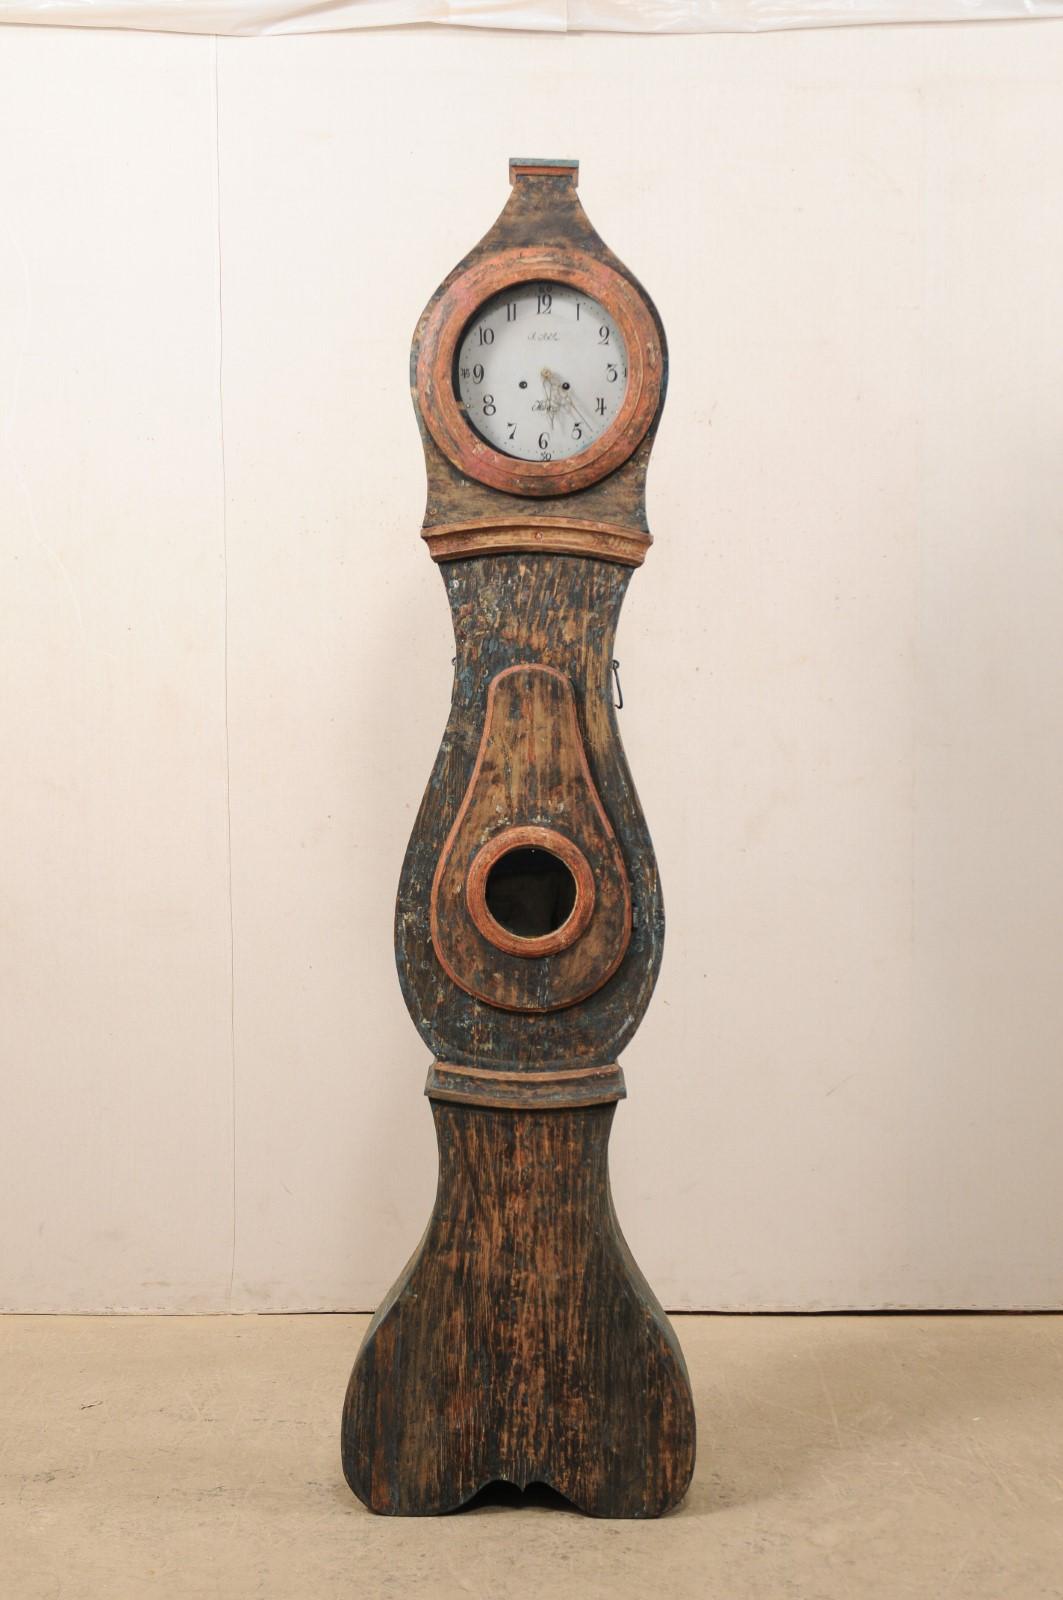 Une horloge grand-père en bois peint du nord de la Suède du début du 19e siècle. Cette horloge de sol antique de Suède (région du Nord) présente une crête ou un bonnet surélevé à sommet plat, avec la face, le cou et le ventre accentués par des